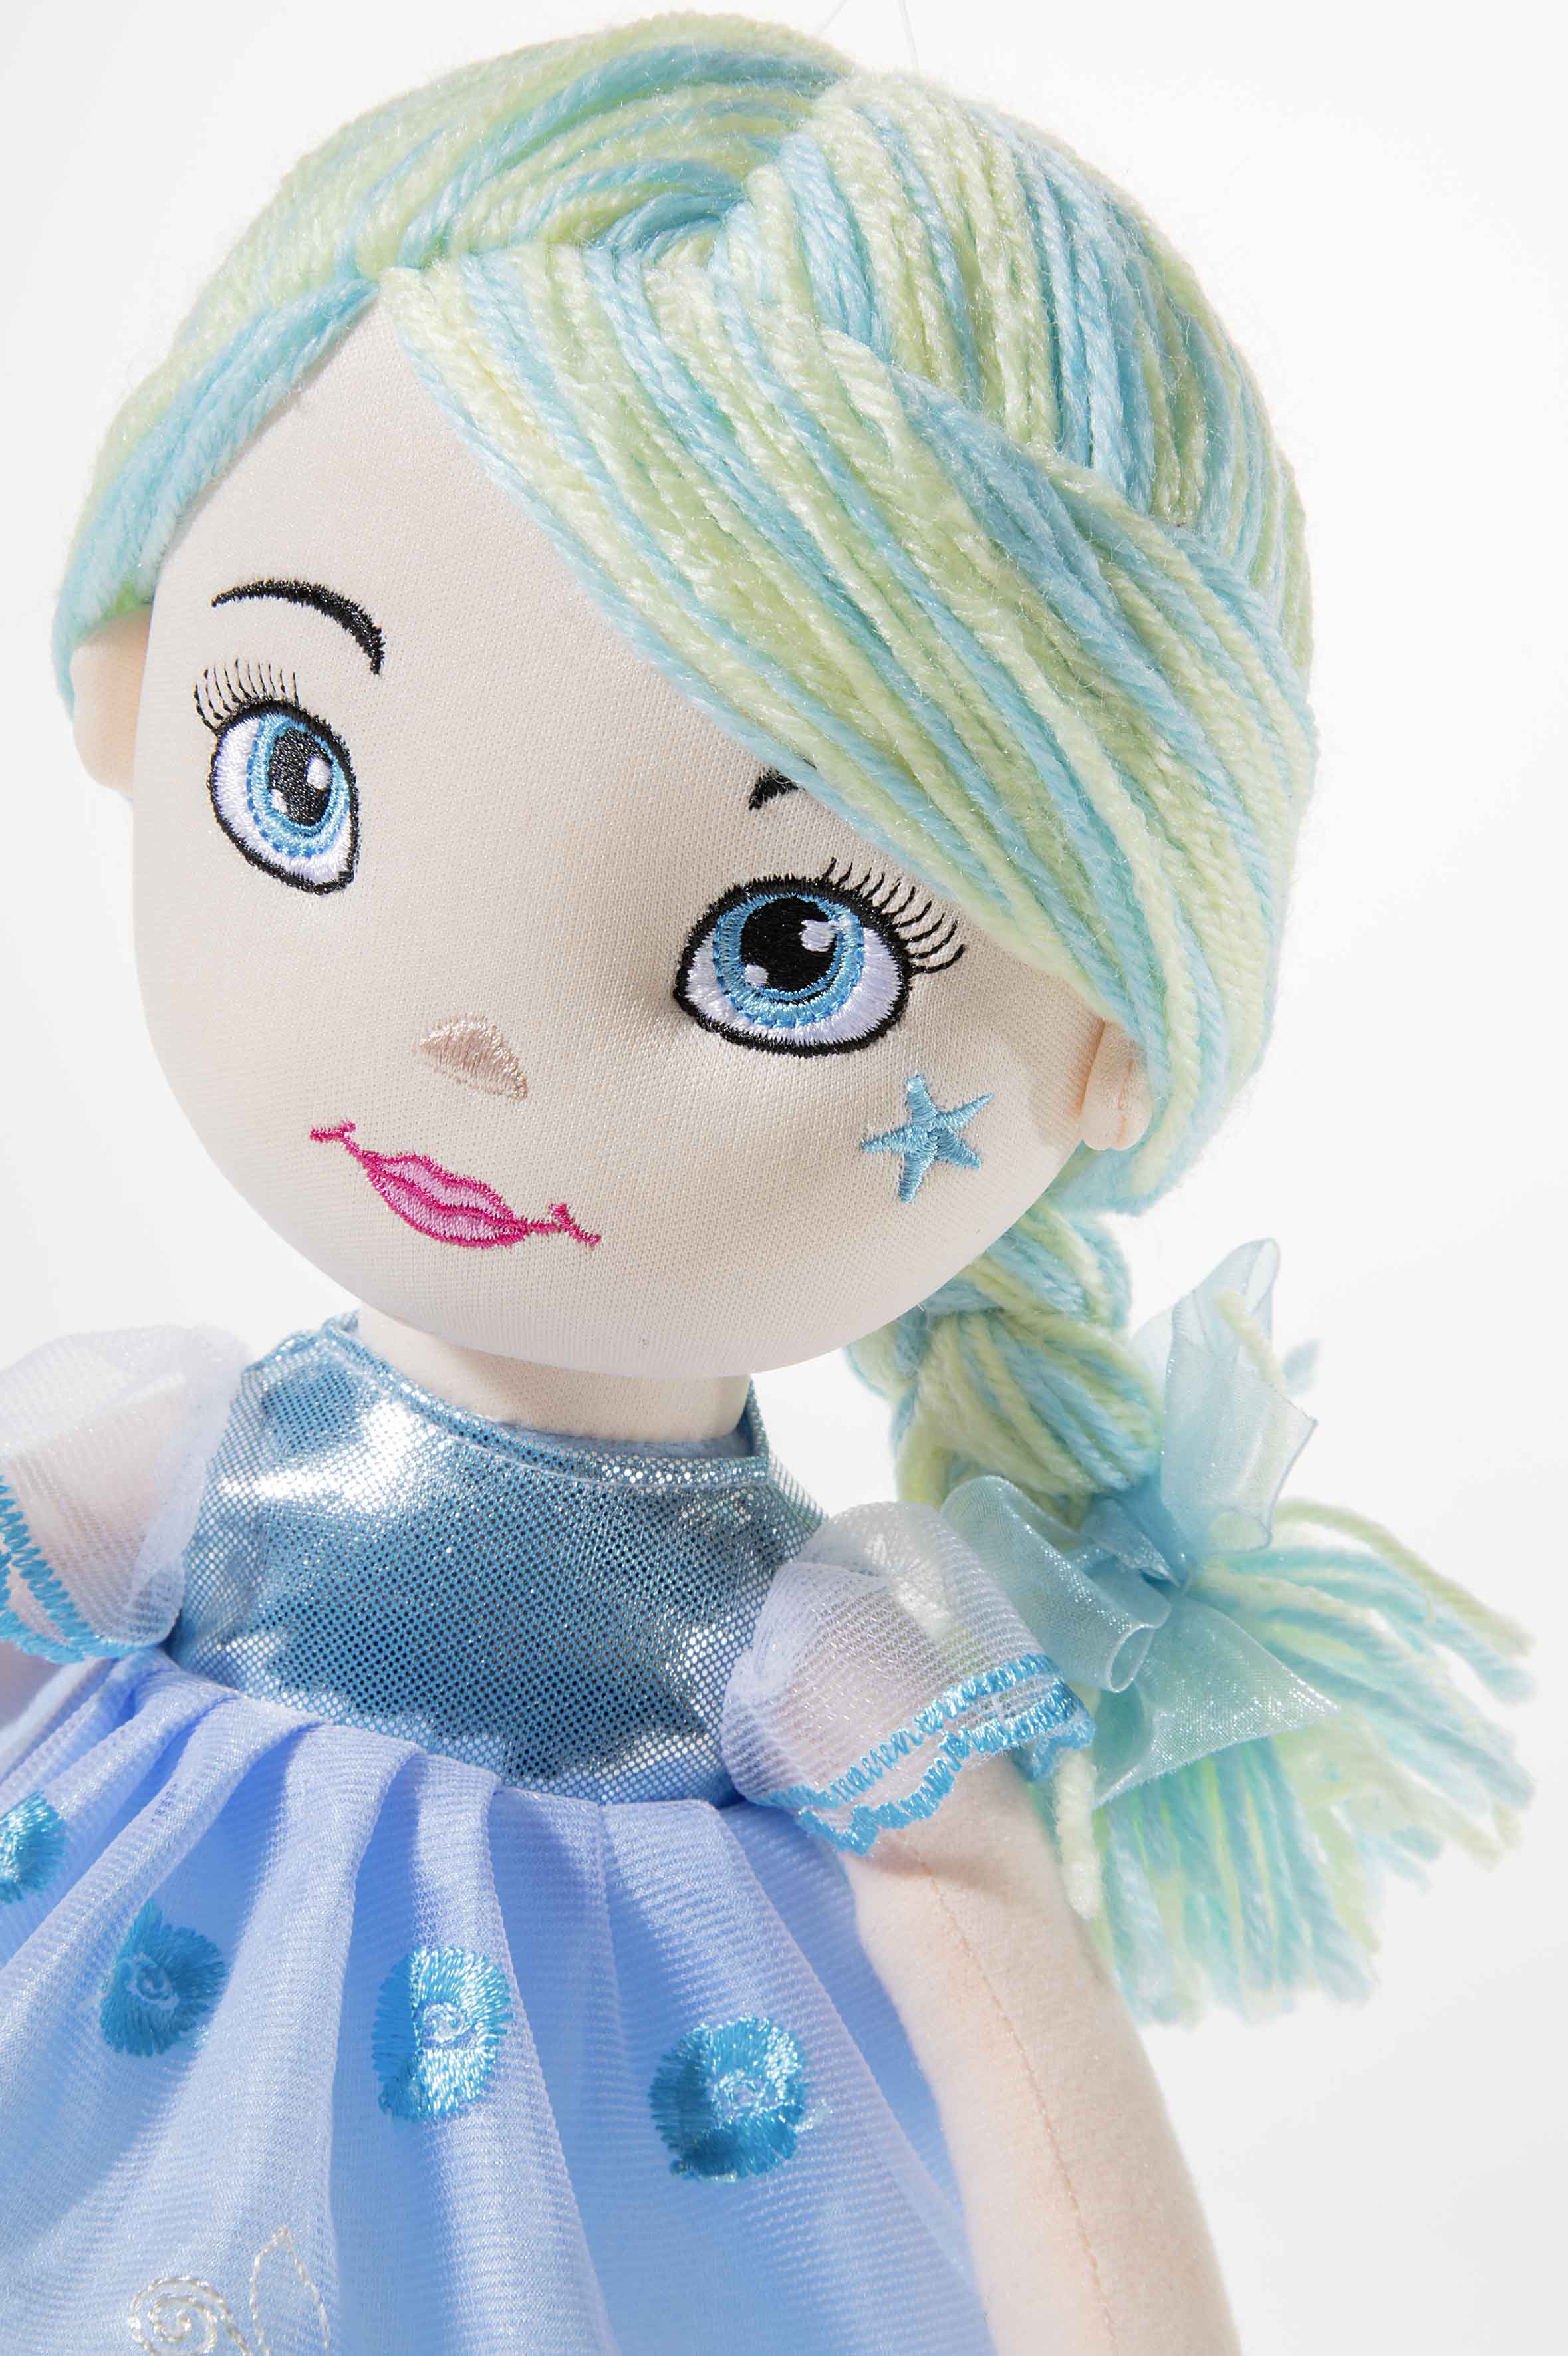 Heunec Bella-Azurri in 35cm aus der Bambola Dolce Serie mit blau-weißen Haaren Frisur